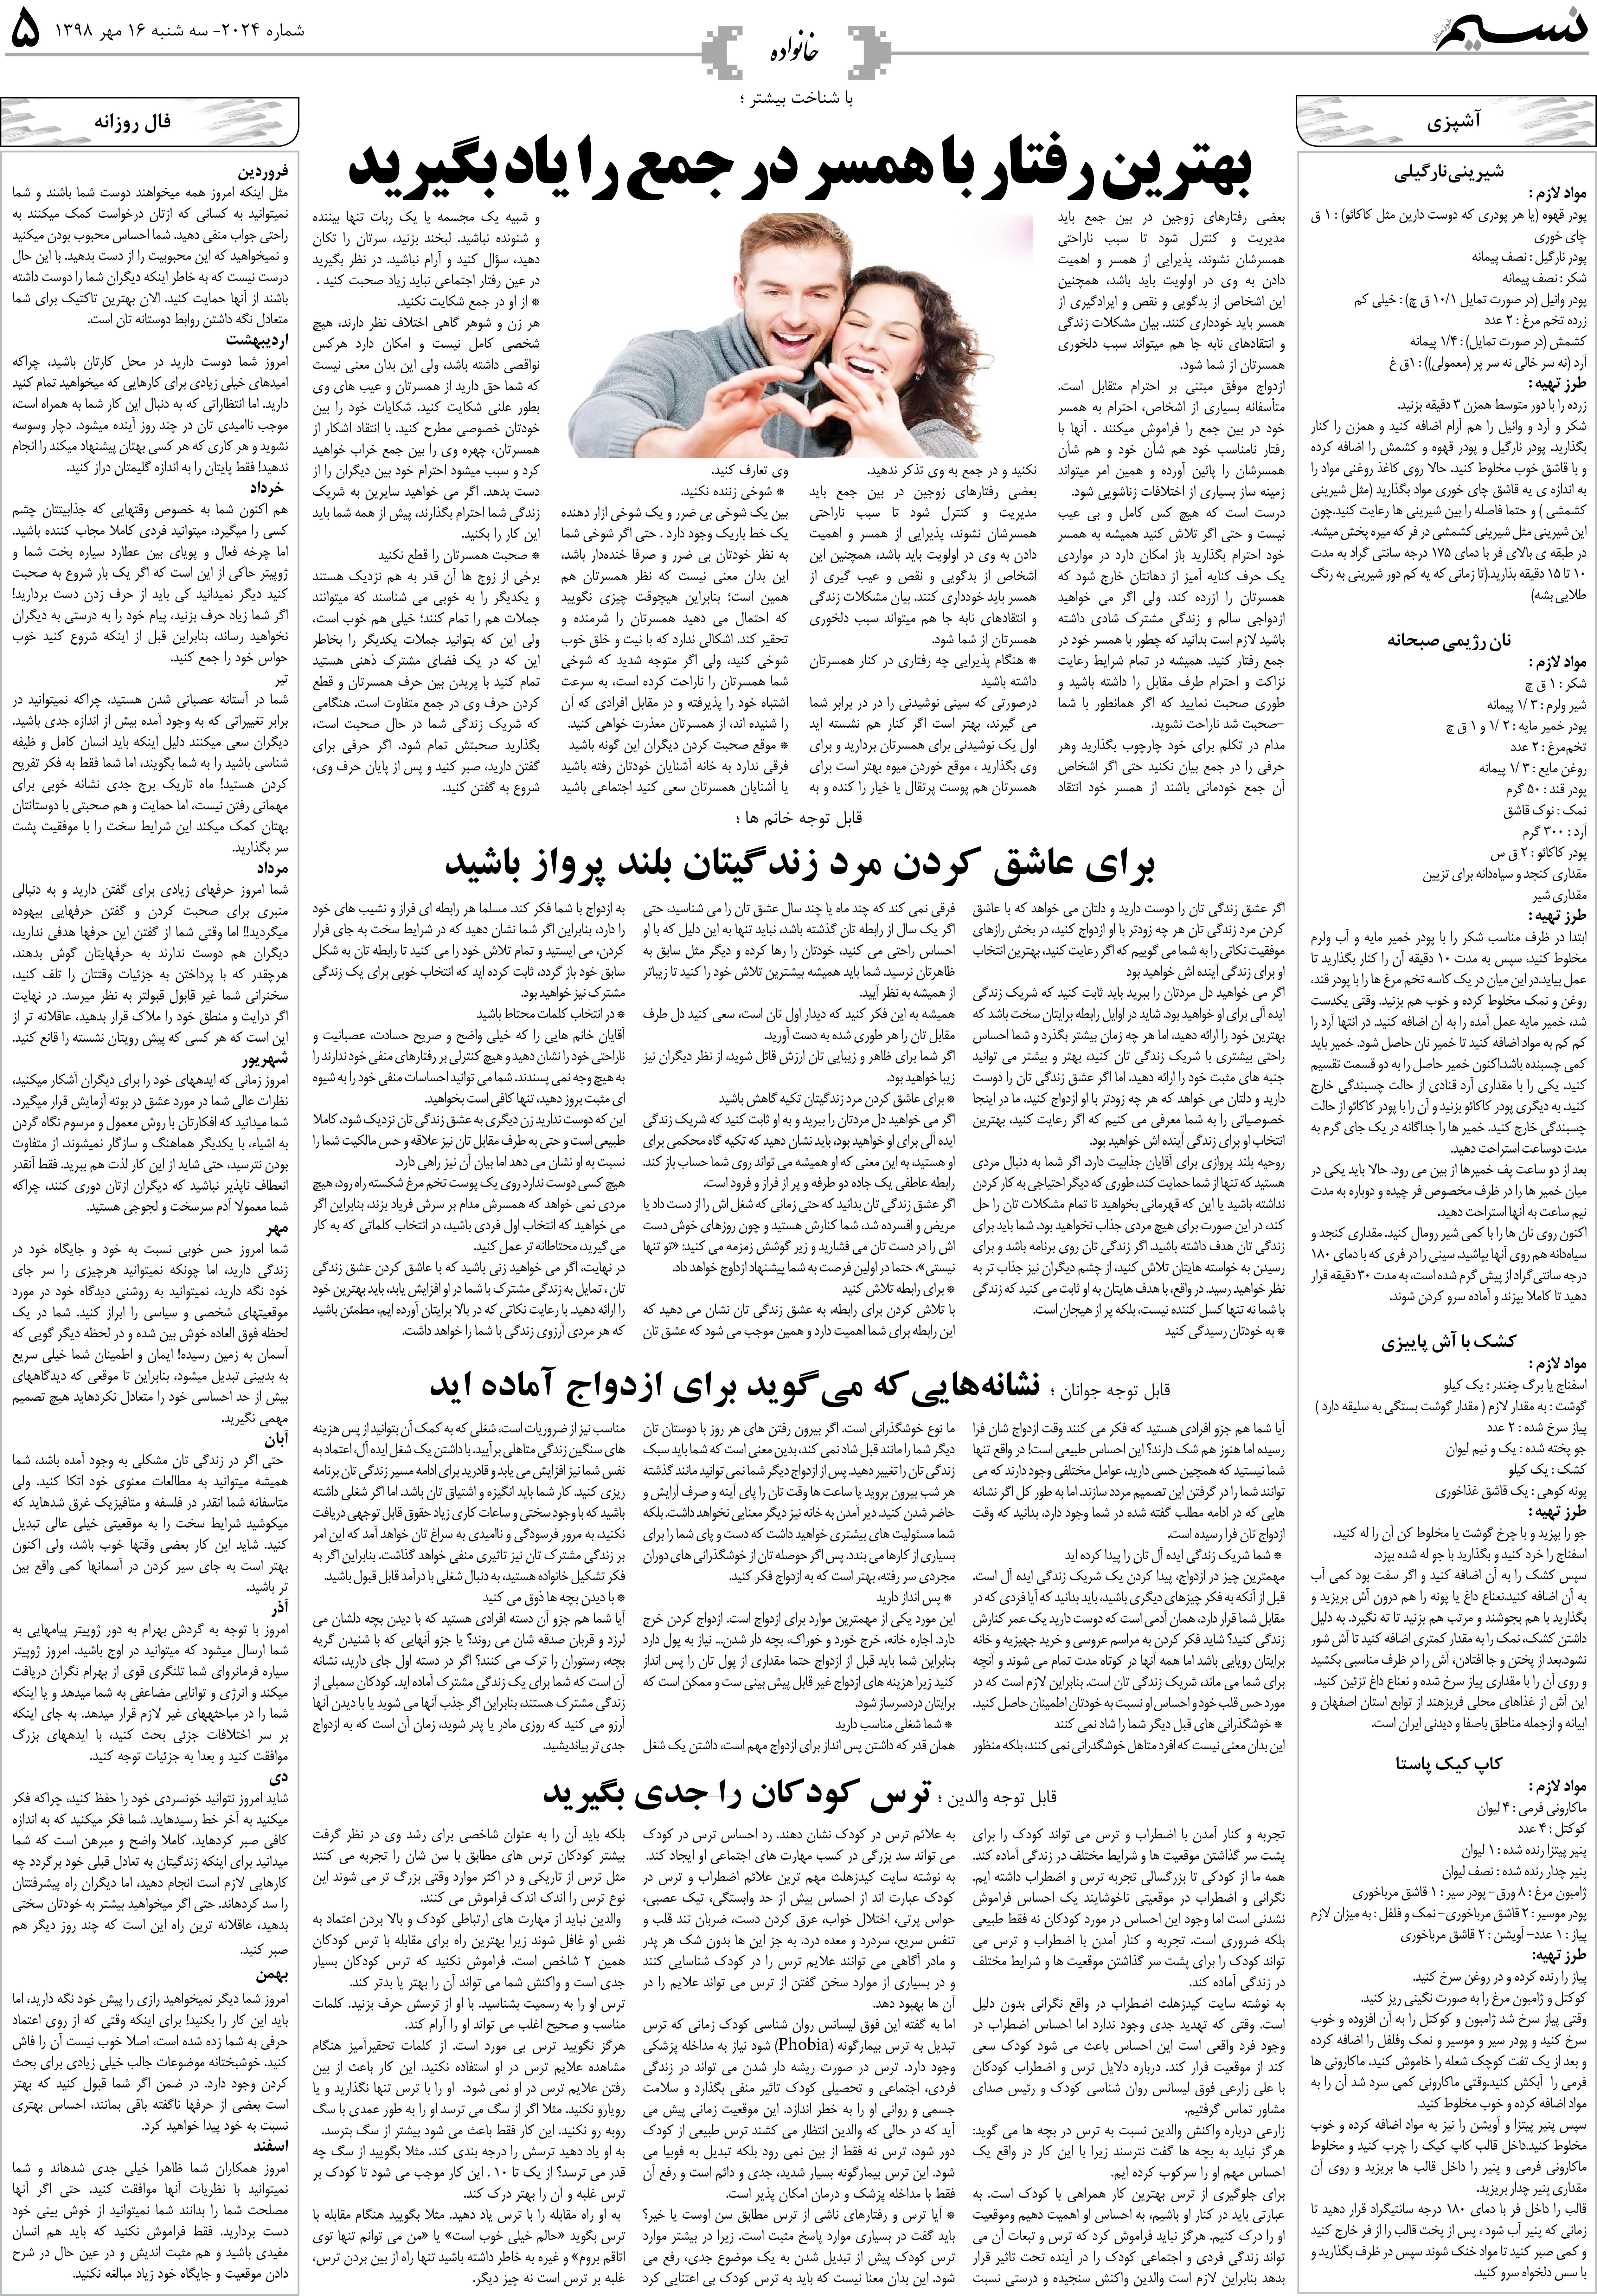 صفحه خانواده روزنامه نسیم شماره 2024